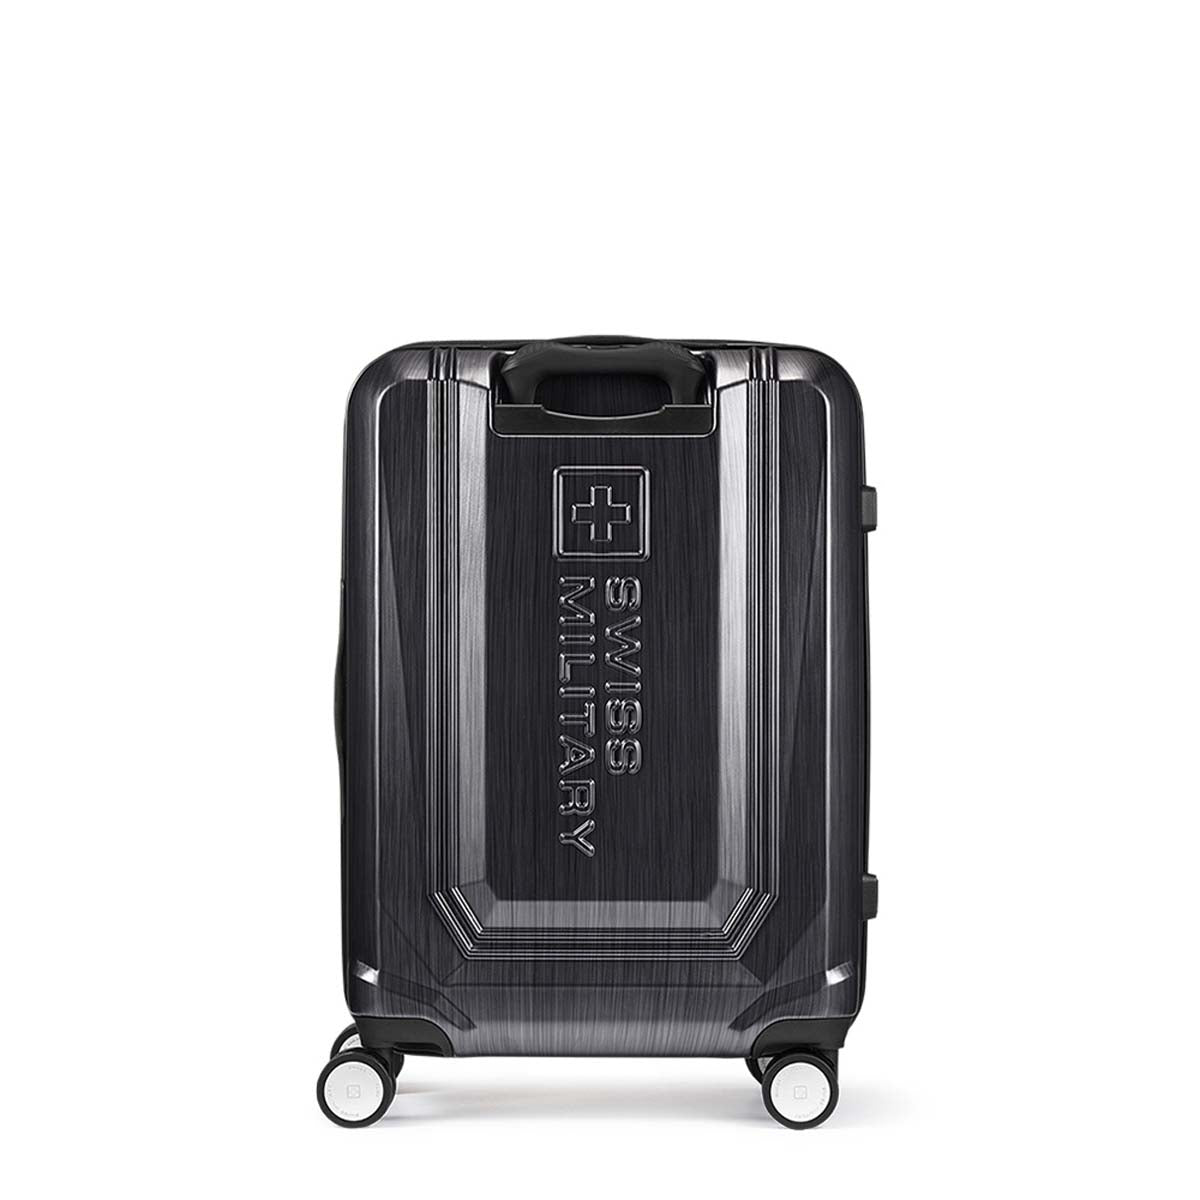 スーツケース Mサイズ 4～6泊 64cm BROQUEL(ブロッケル) チタングレー